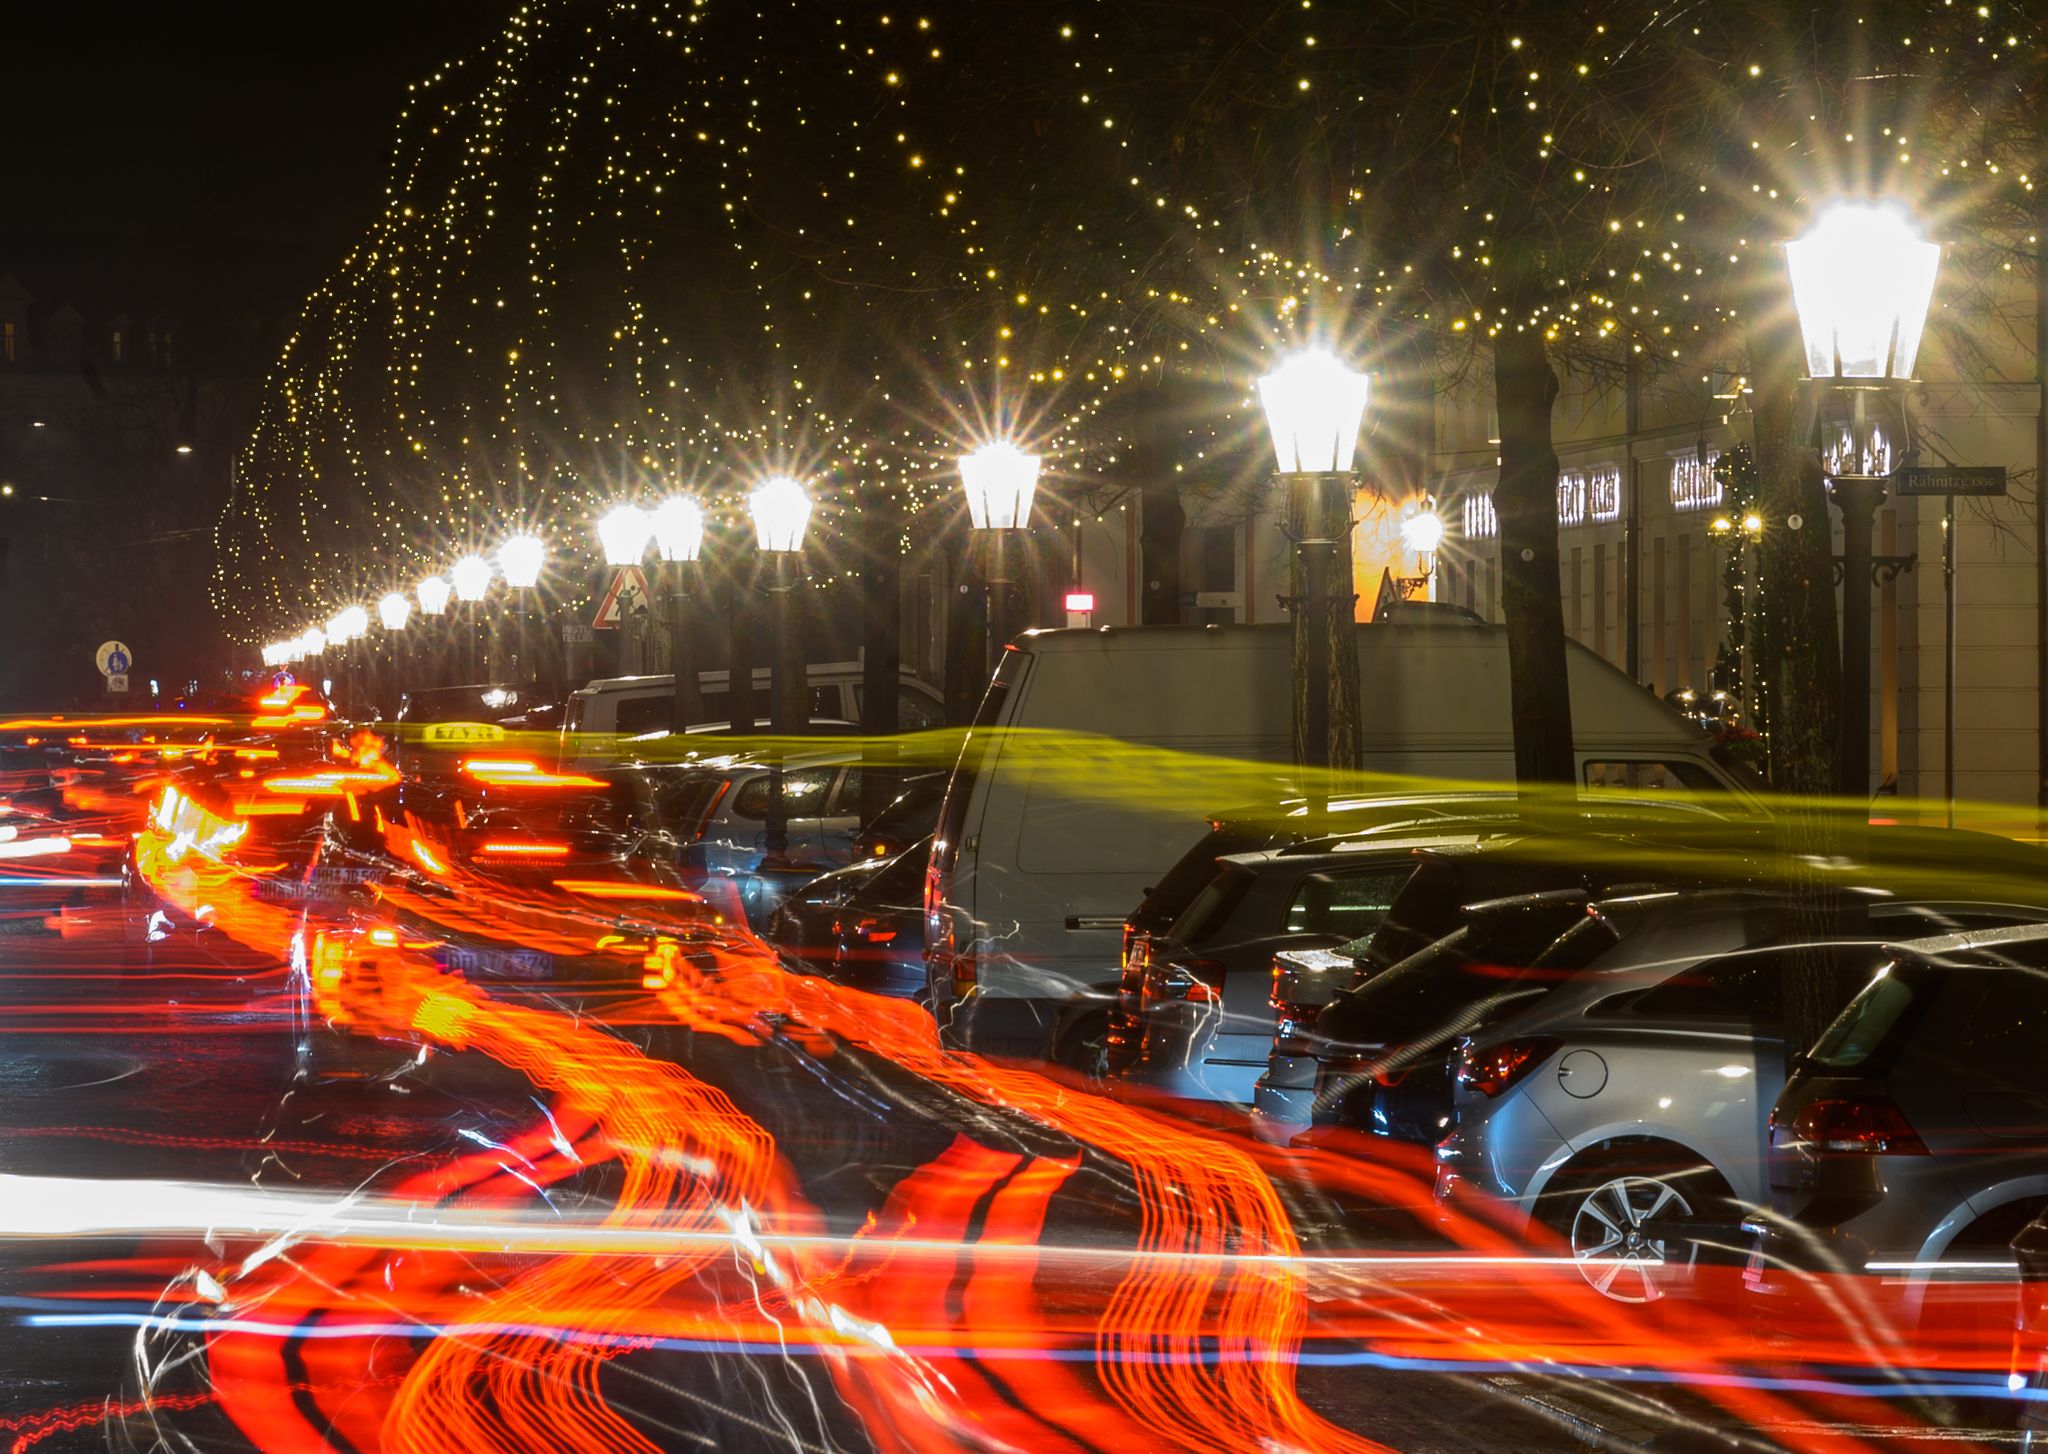 ARCHIVO - Faroles iluminan la calle Königstrasse en Dresde, por la que circulan autos con sus faros encendidos. La iluminación nocturna continua es un tormento para muchos animales. Foto: Robert Michael/dpa